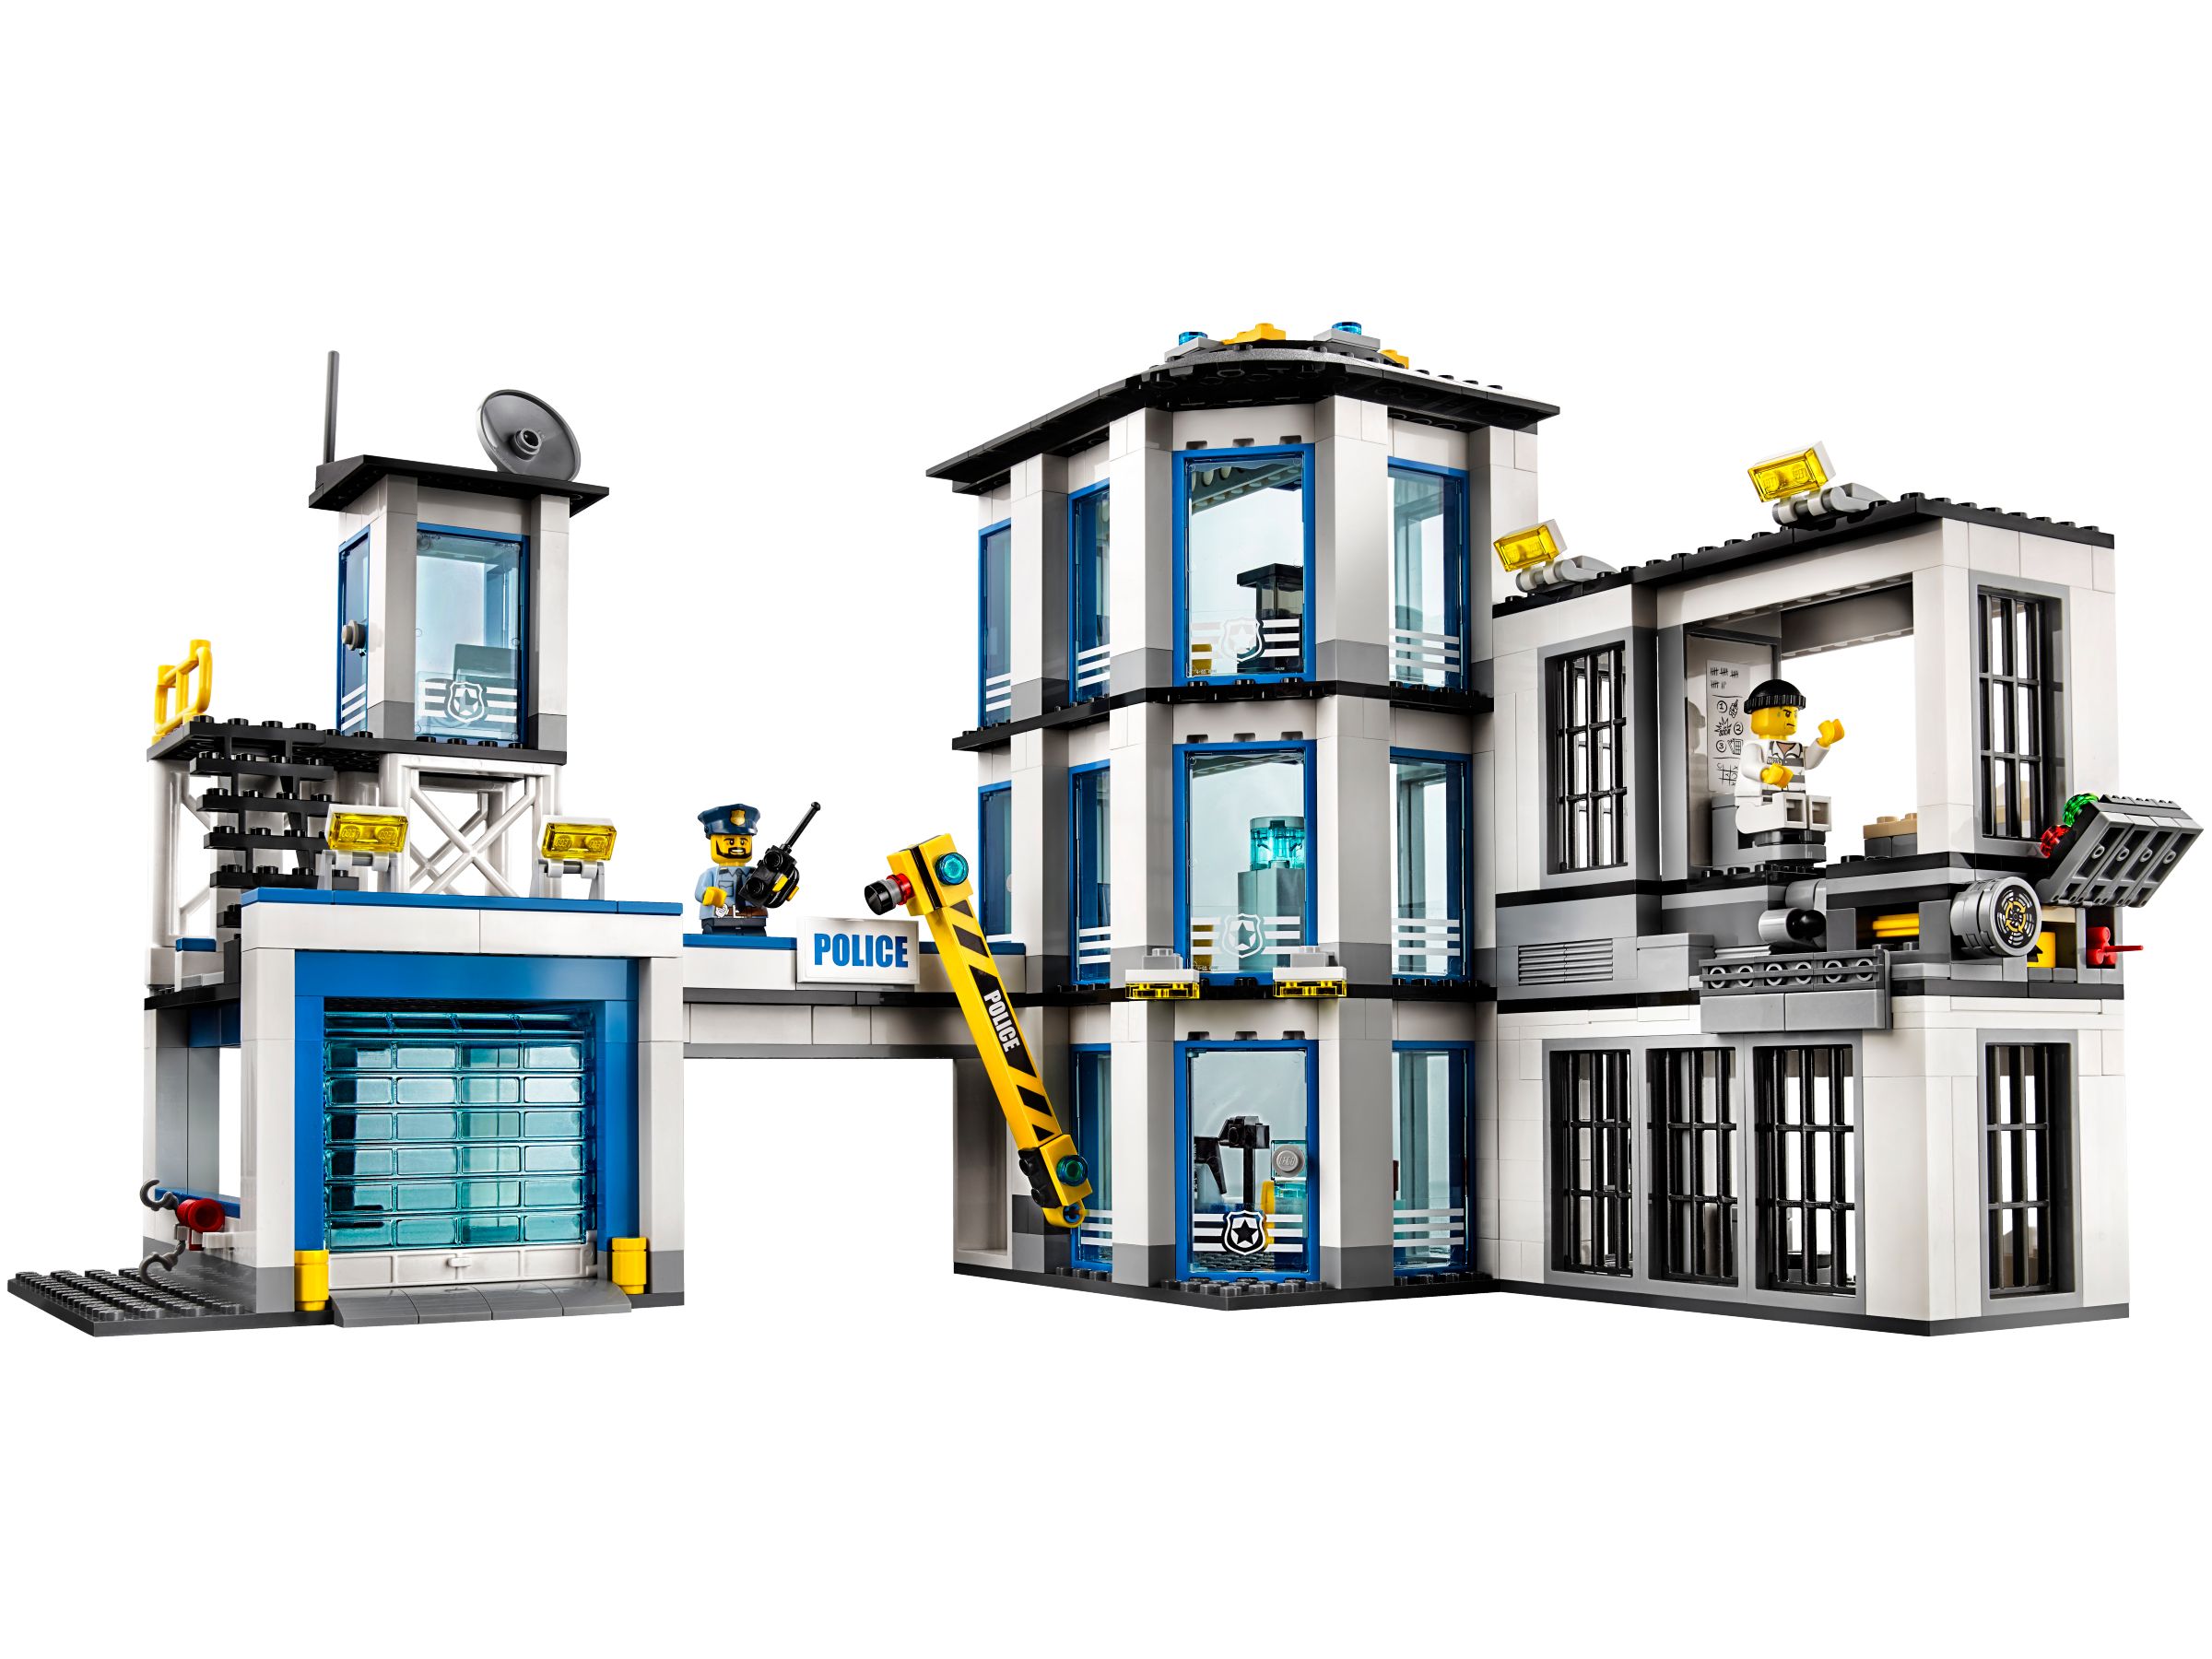 LEGO City 60141 Polizeiwache LEGO_60141_alt2.jpg